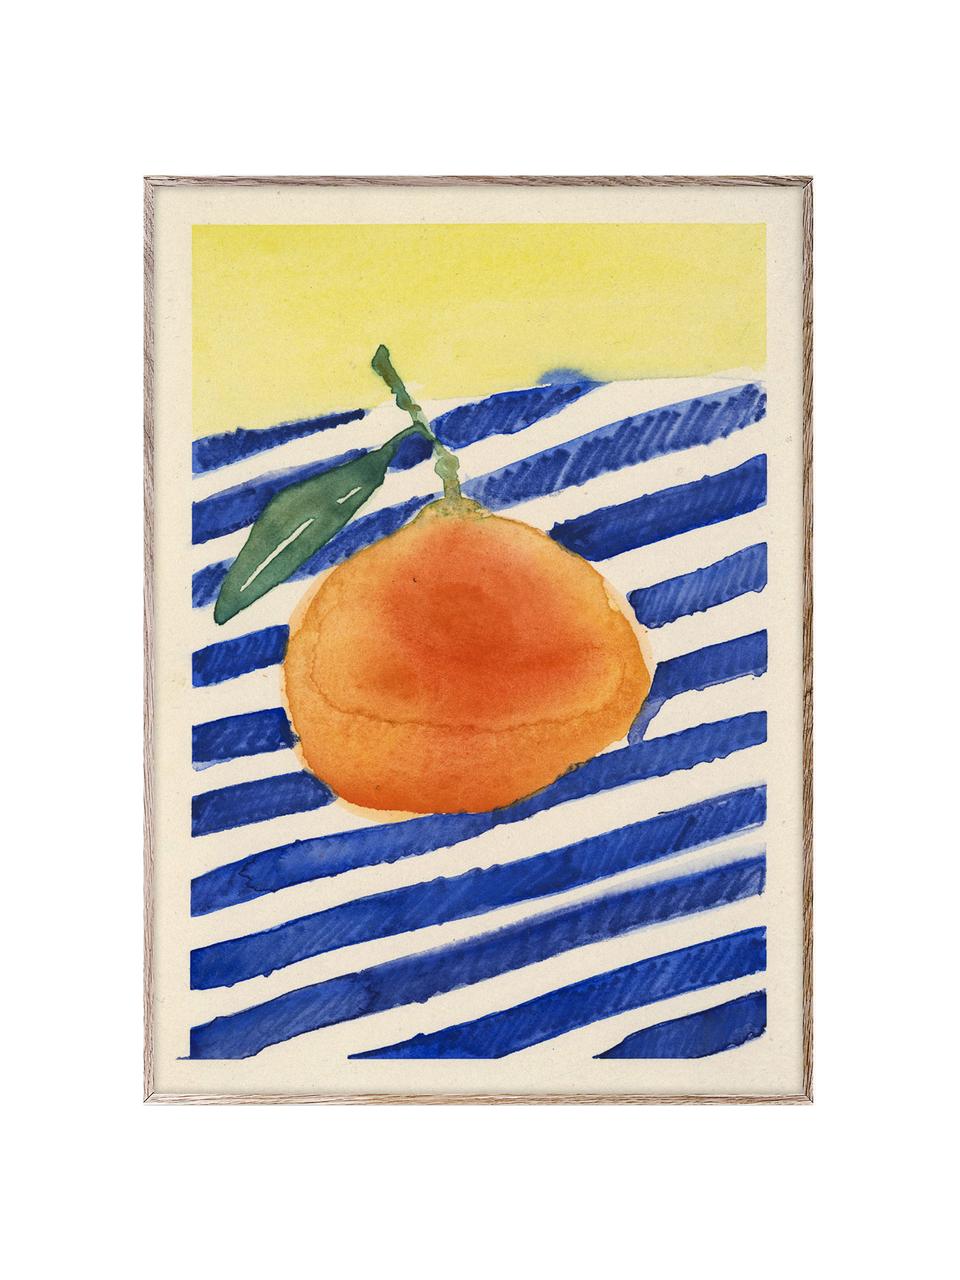 Plagát Orange, 210 g matný papier Hahnemühle, digitálna tlač s 10 farbami odolnými voči UV žiareniu, Oranžová, tmavomodrá, svetložltá, Š 30 x V 40 cm